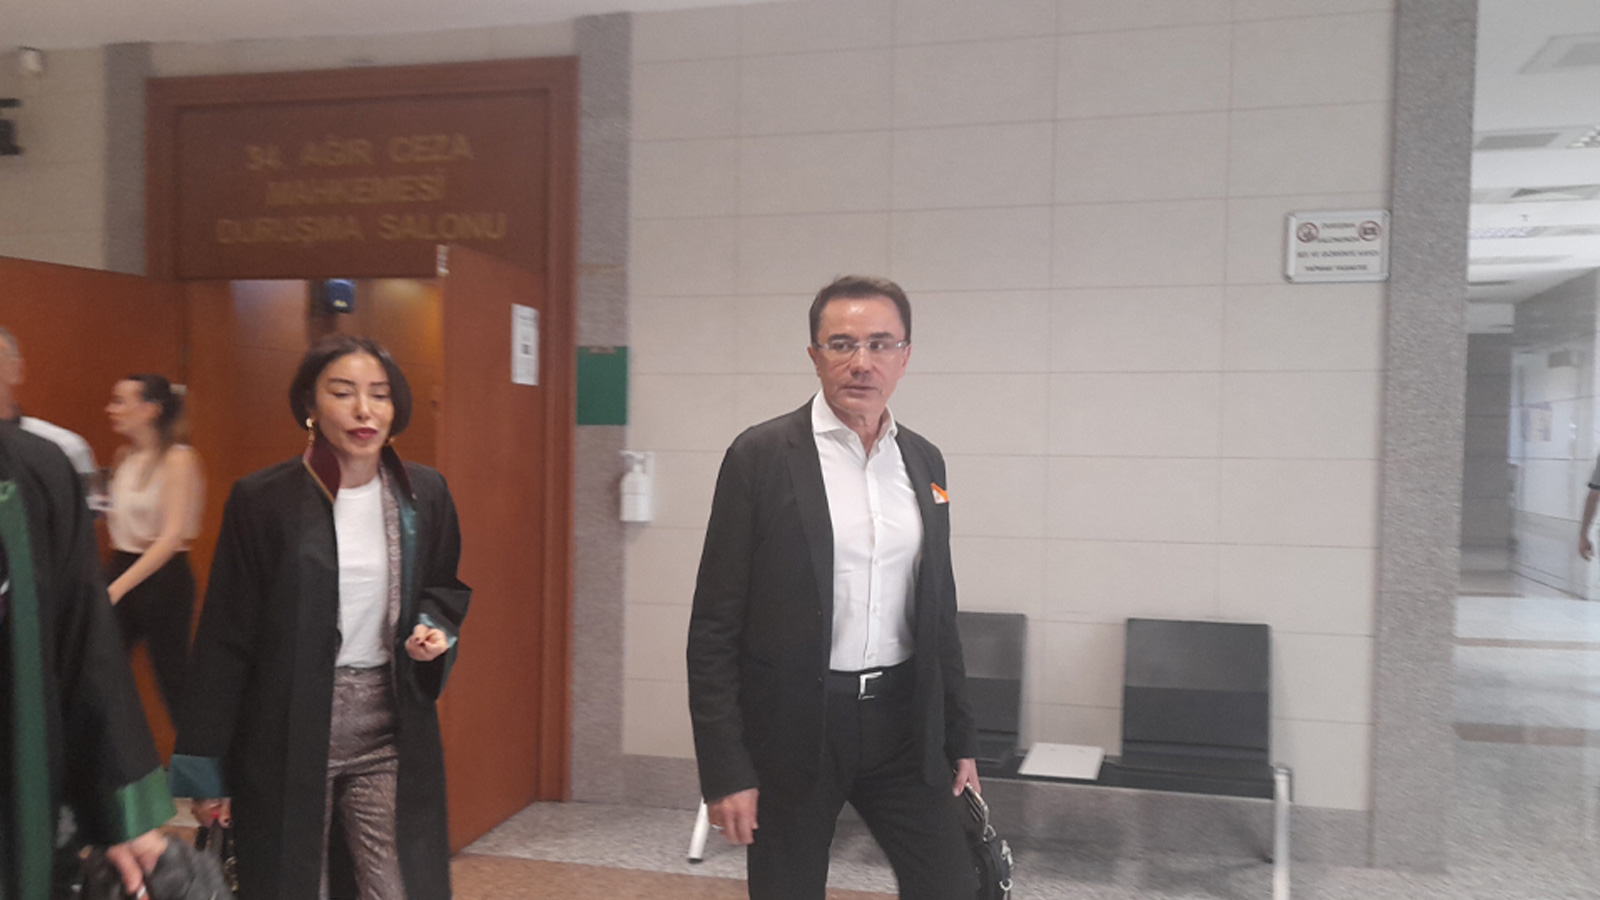 Cinsel istismar suçlamasıyla yargılanan Ender Saraç'ın oğlu mahkemede şaşırttı!